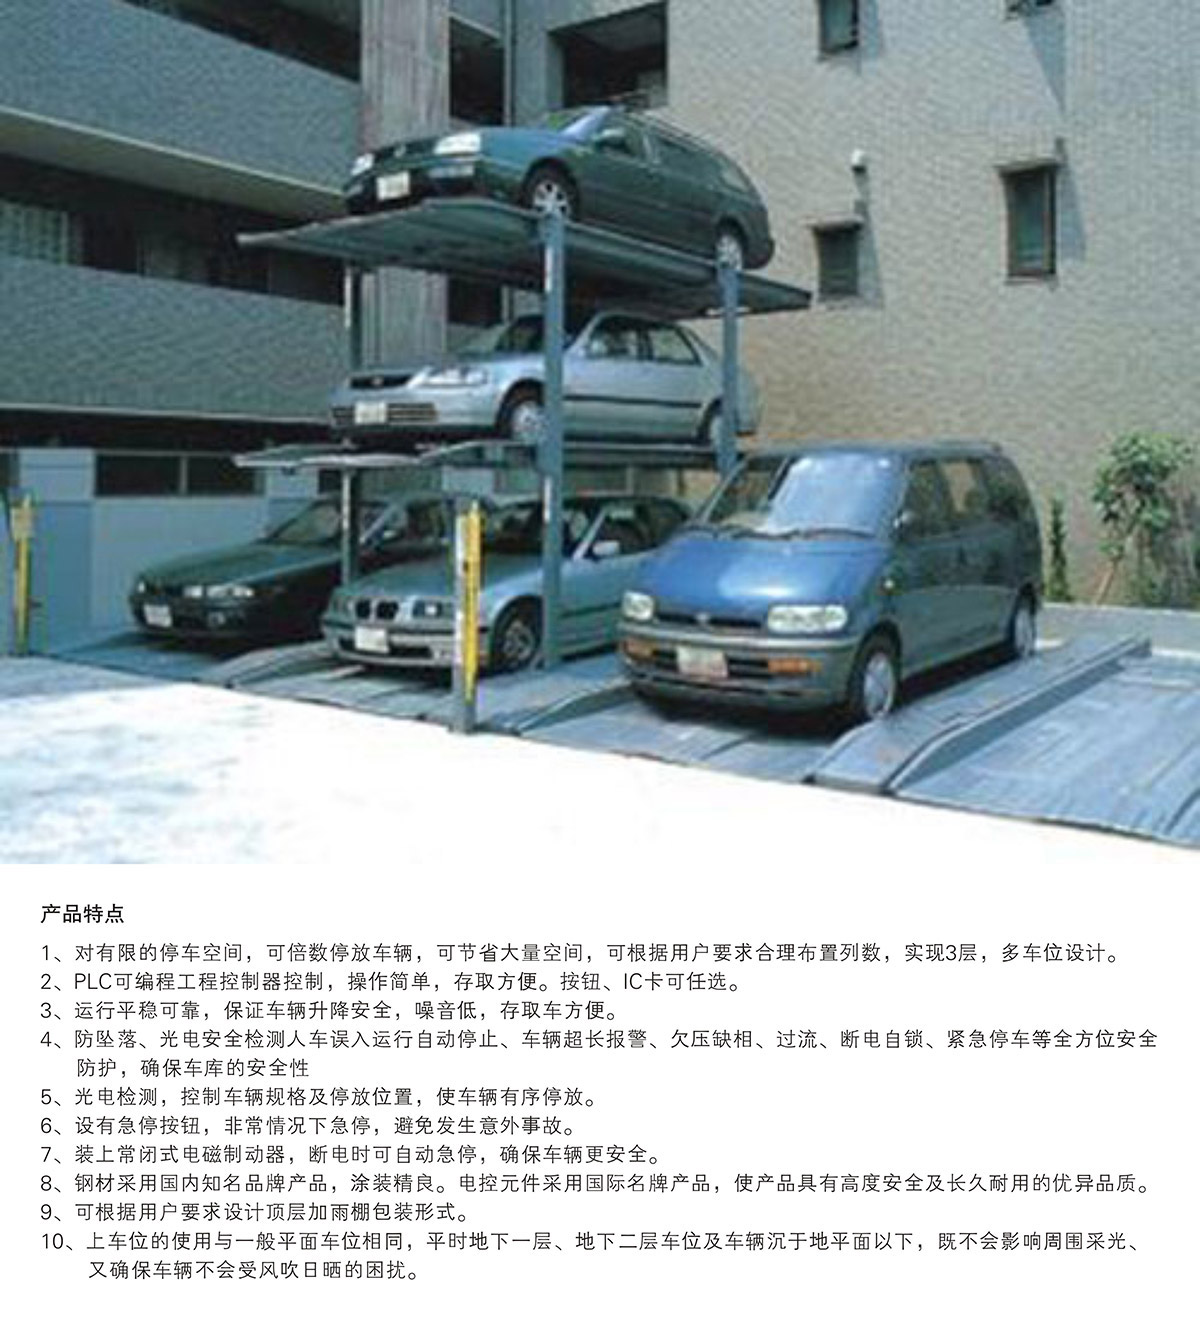 贵州PJS3-D2三层地坑简易升降立体停车库产品特点.jpg